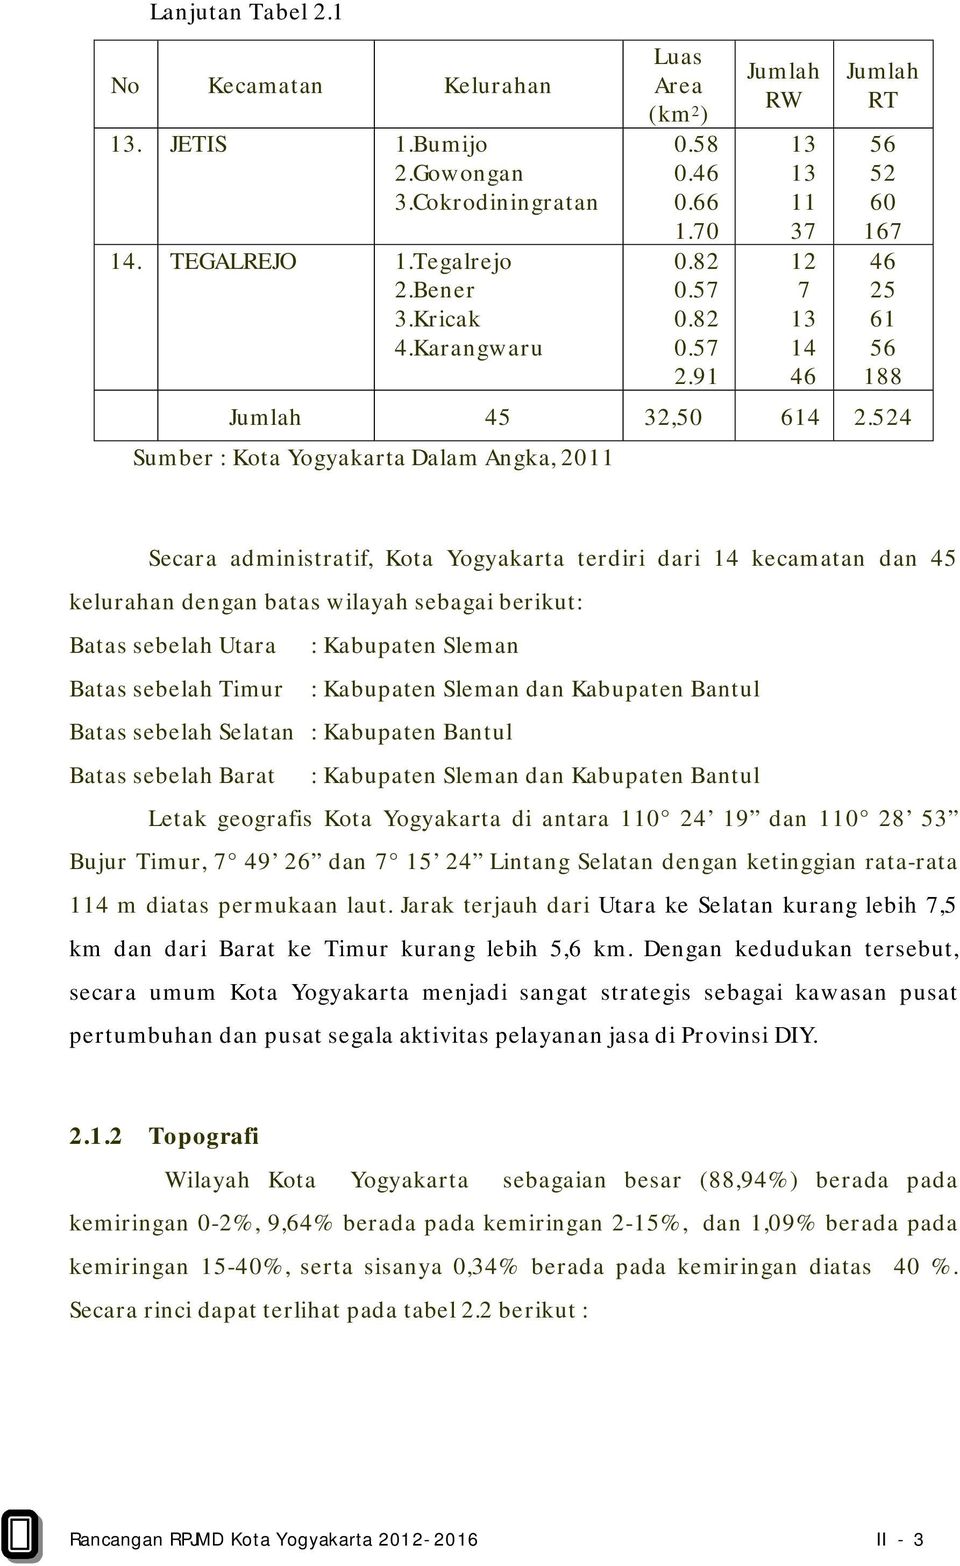 524 Sumber : Kota Yogyakarta Dalam Angka, 2011 Secara administratif, Kota Yogyakarta terdiri dari 14 kecamatan dan 45 kelurahan dengan batas wilayah sebagai berikut: Batas sebelah Utara : Kabupaten